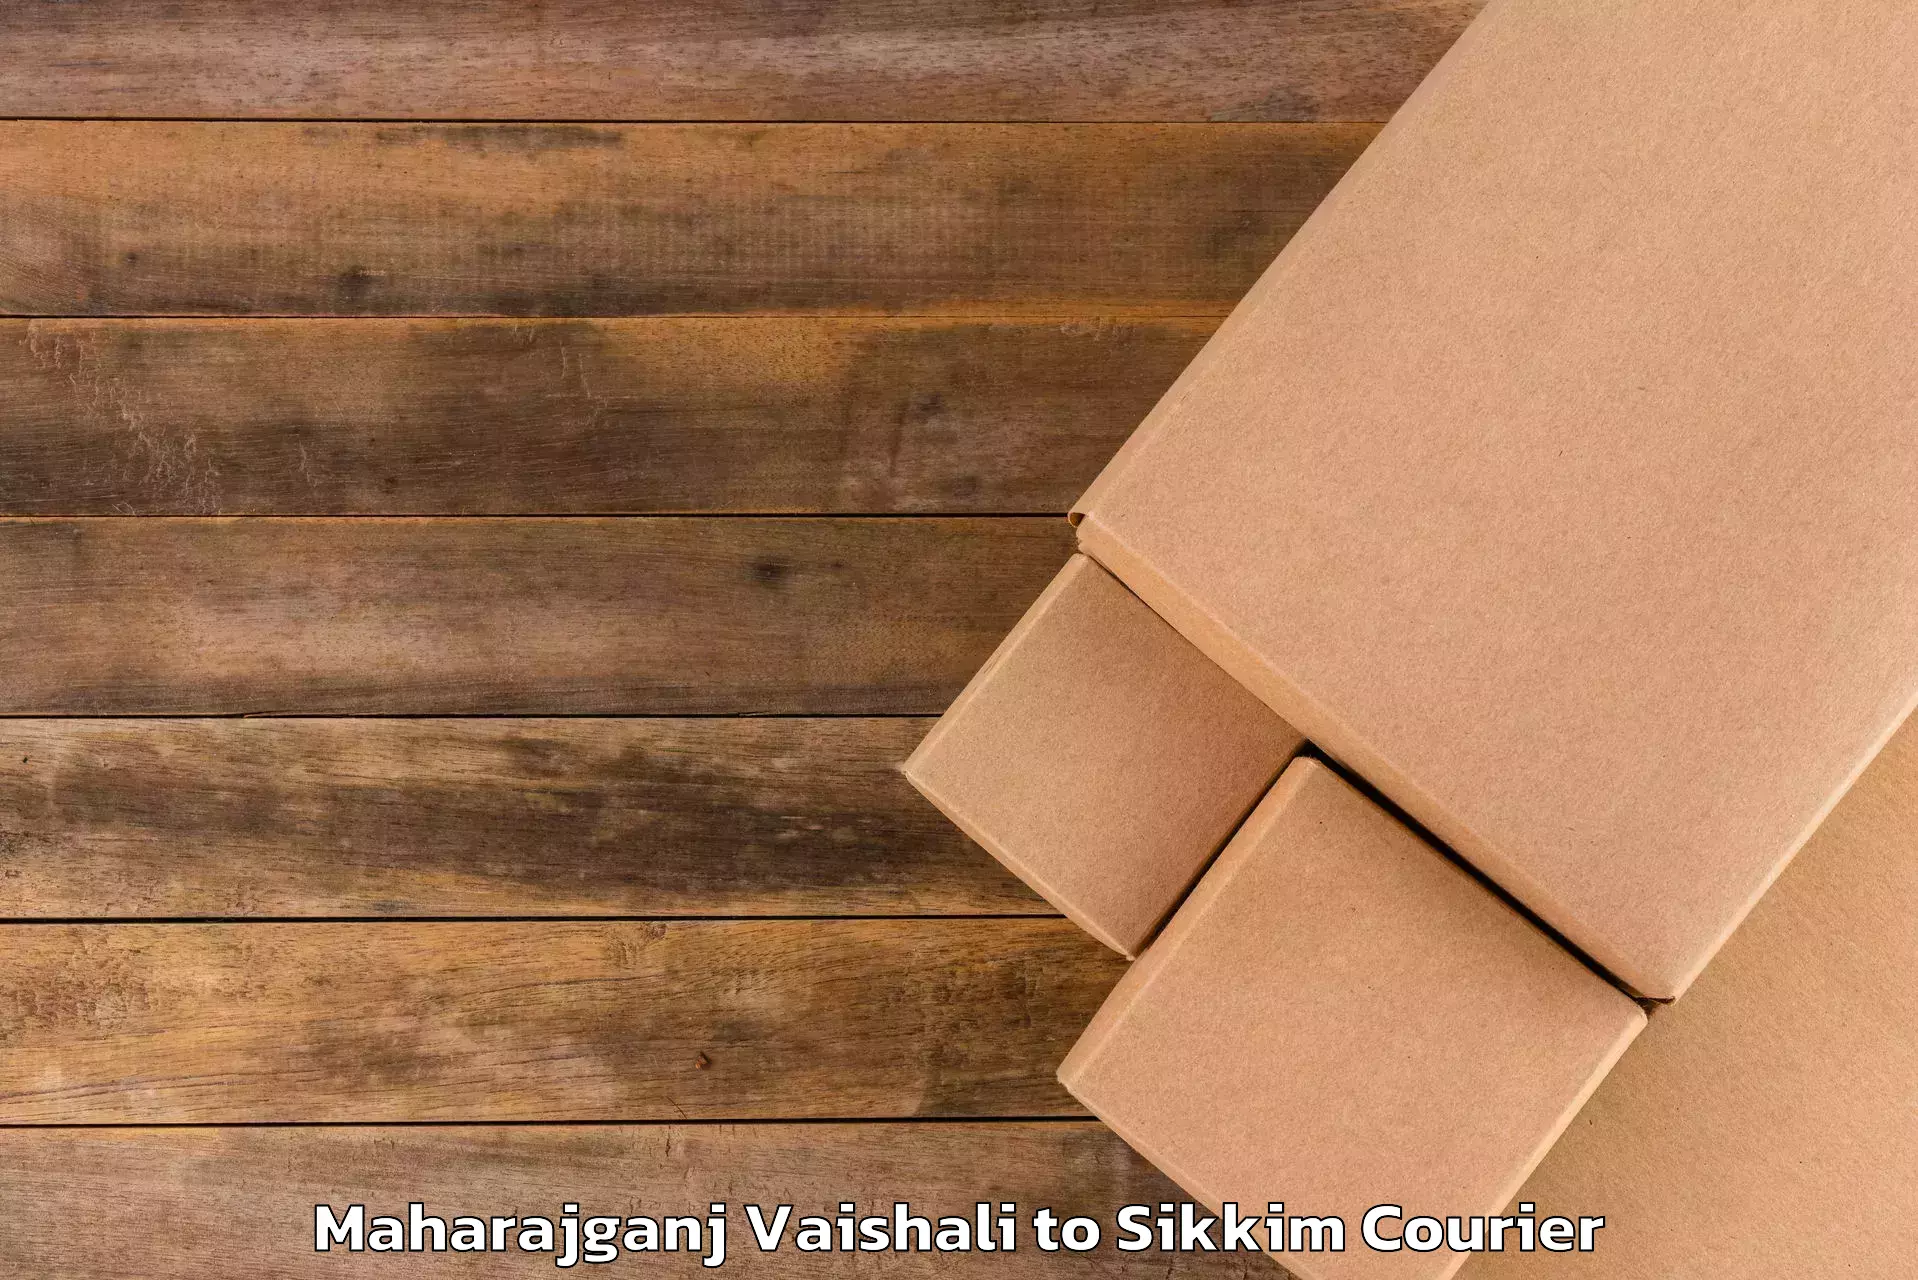 Customized luggage delivery Maharajganj Vaishali to Pelling